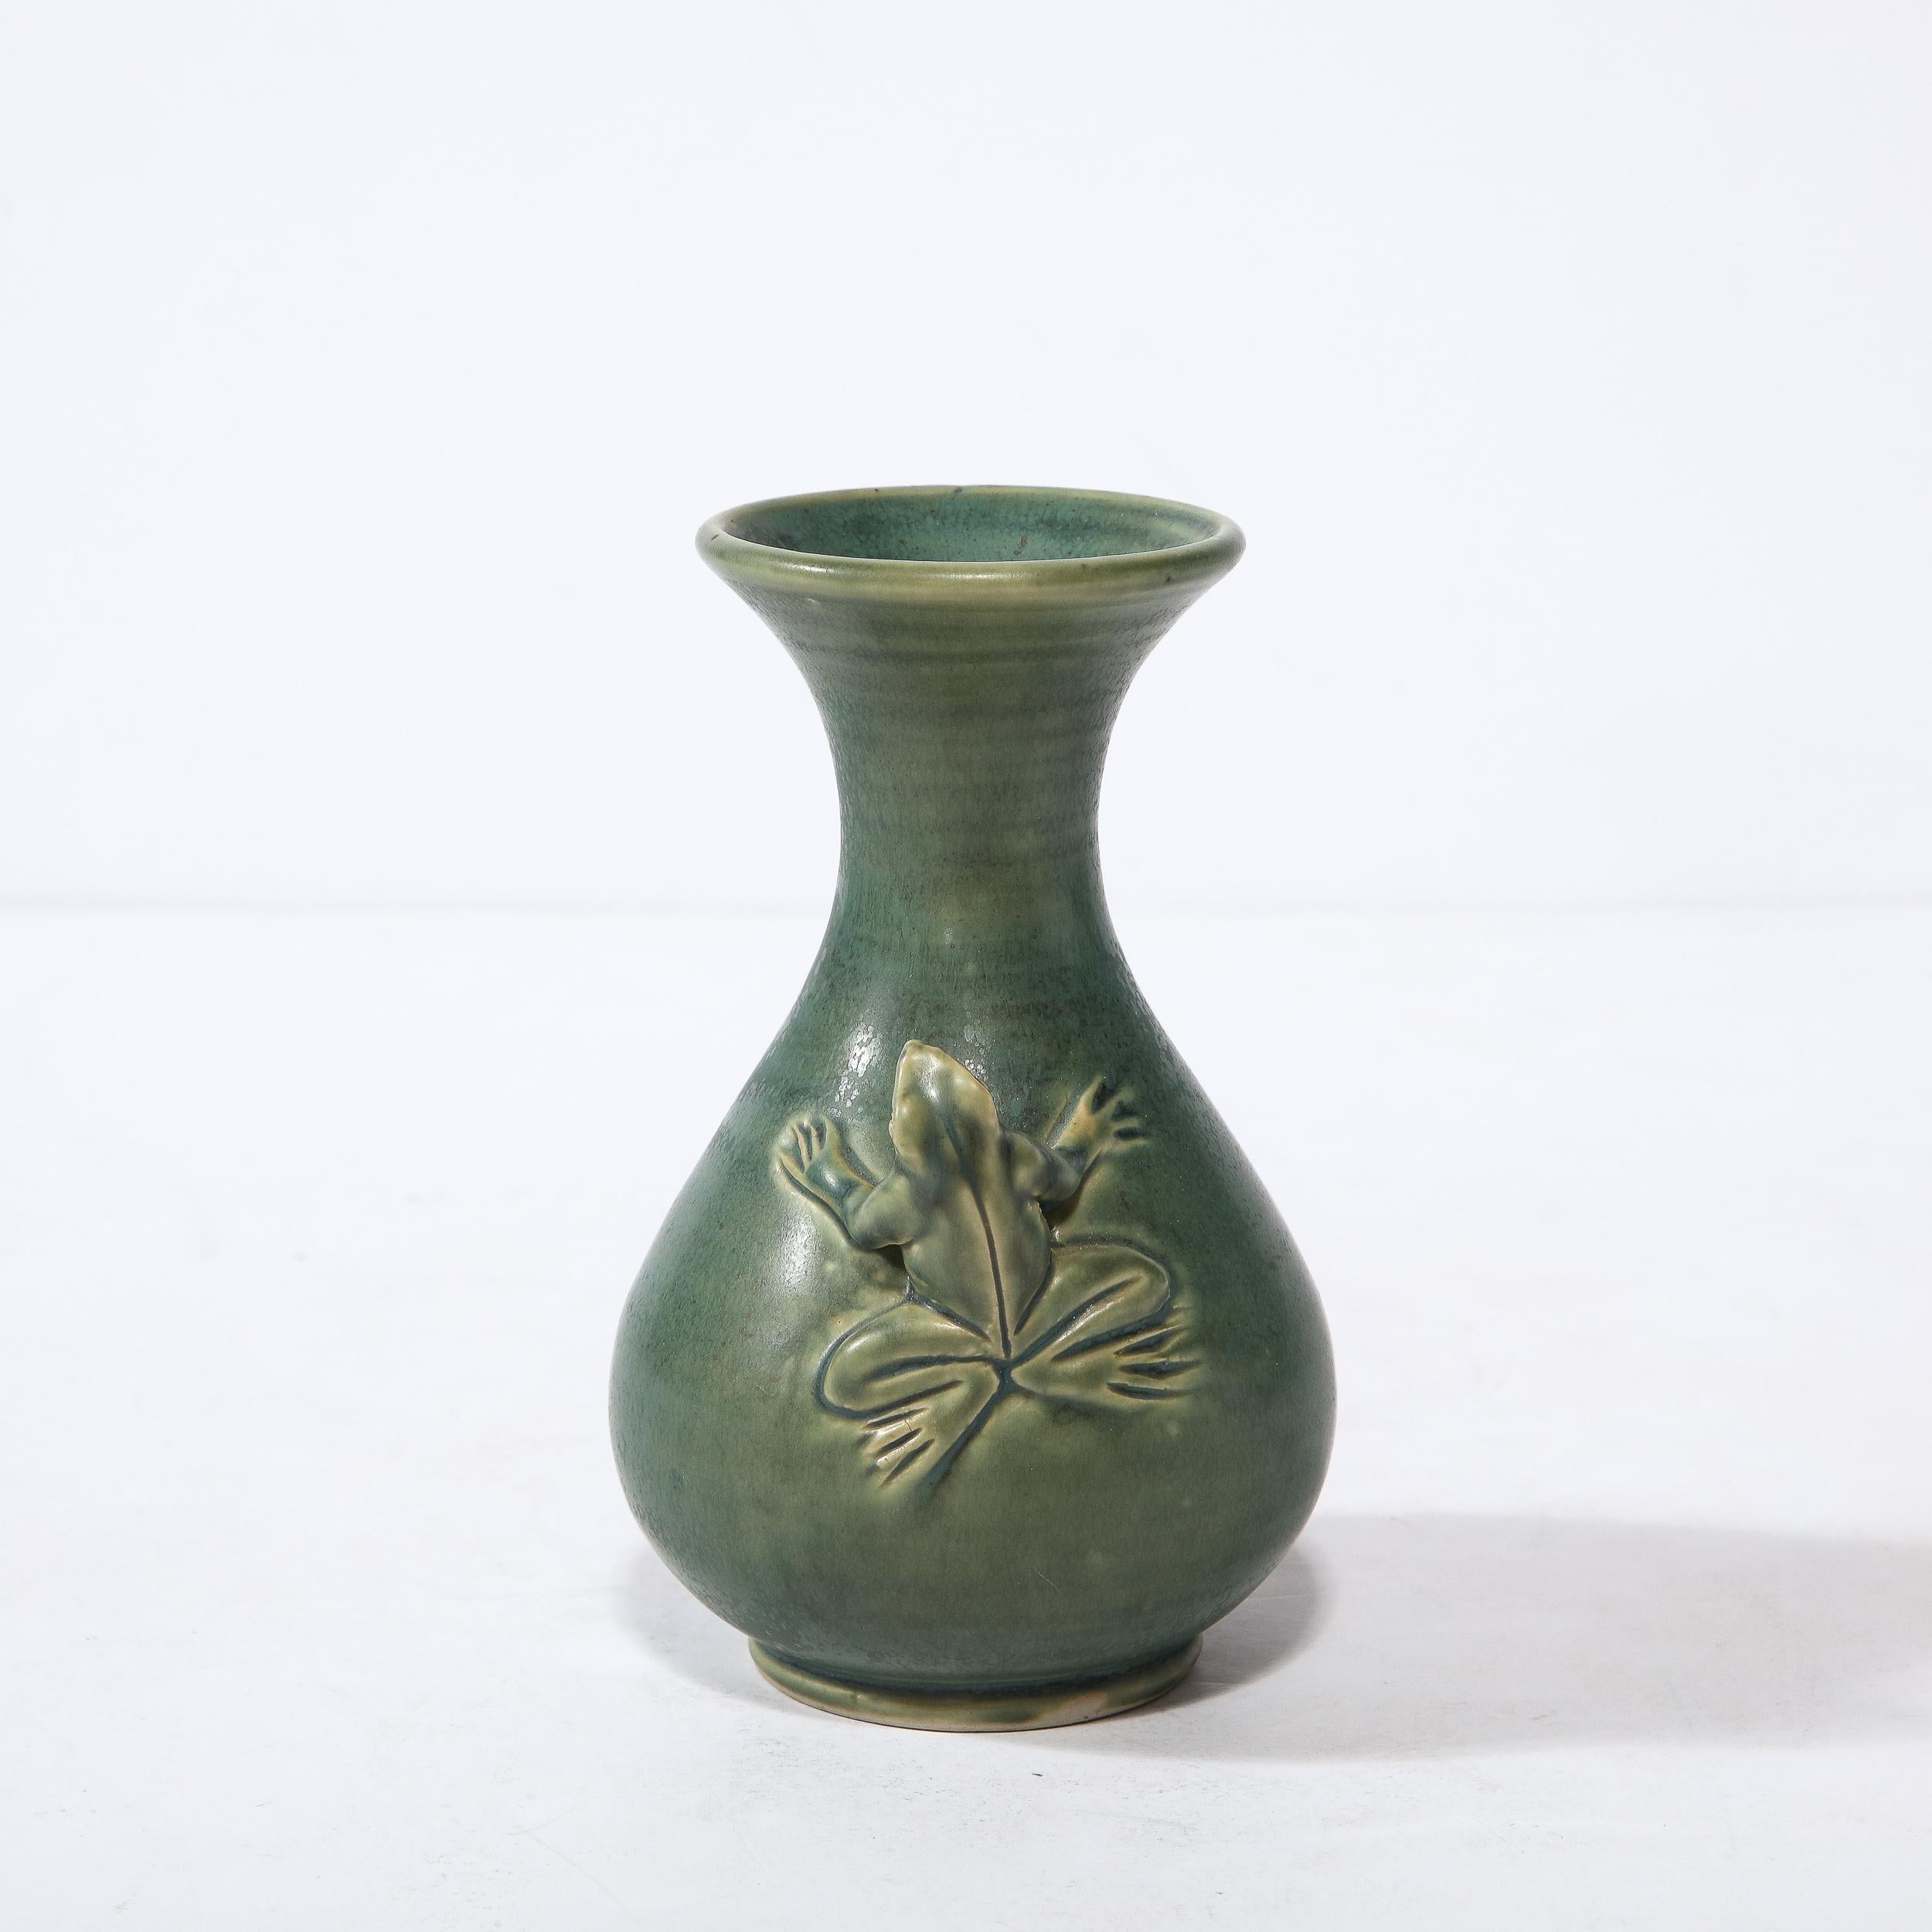 Ce vase sophistiqué et fantaisiste en céramique moderniste a été réalisé en Indonésie au cours de la seconde moitié du XXe siècle. Il présente une silhouette sculpturale ondulante avec un corps protubérant qui se rétrécit de façon spectaculaire au